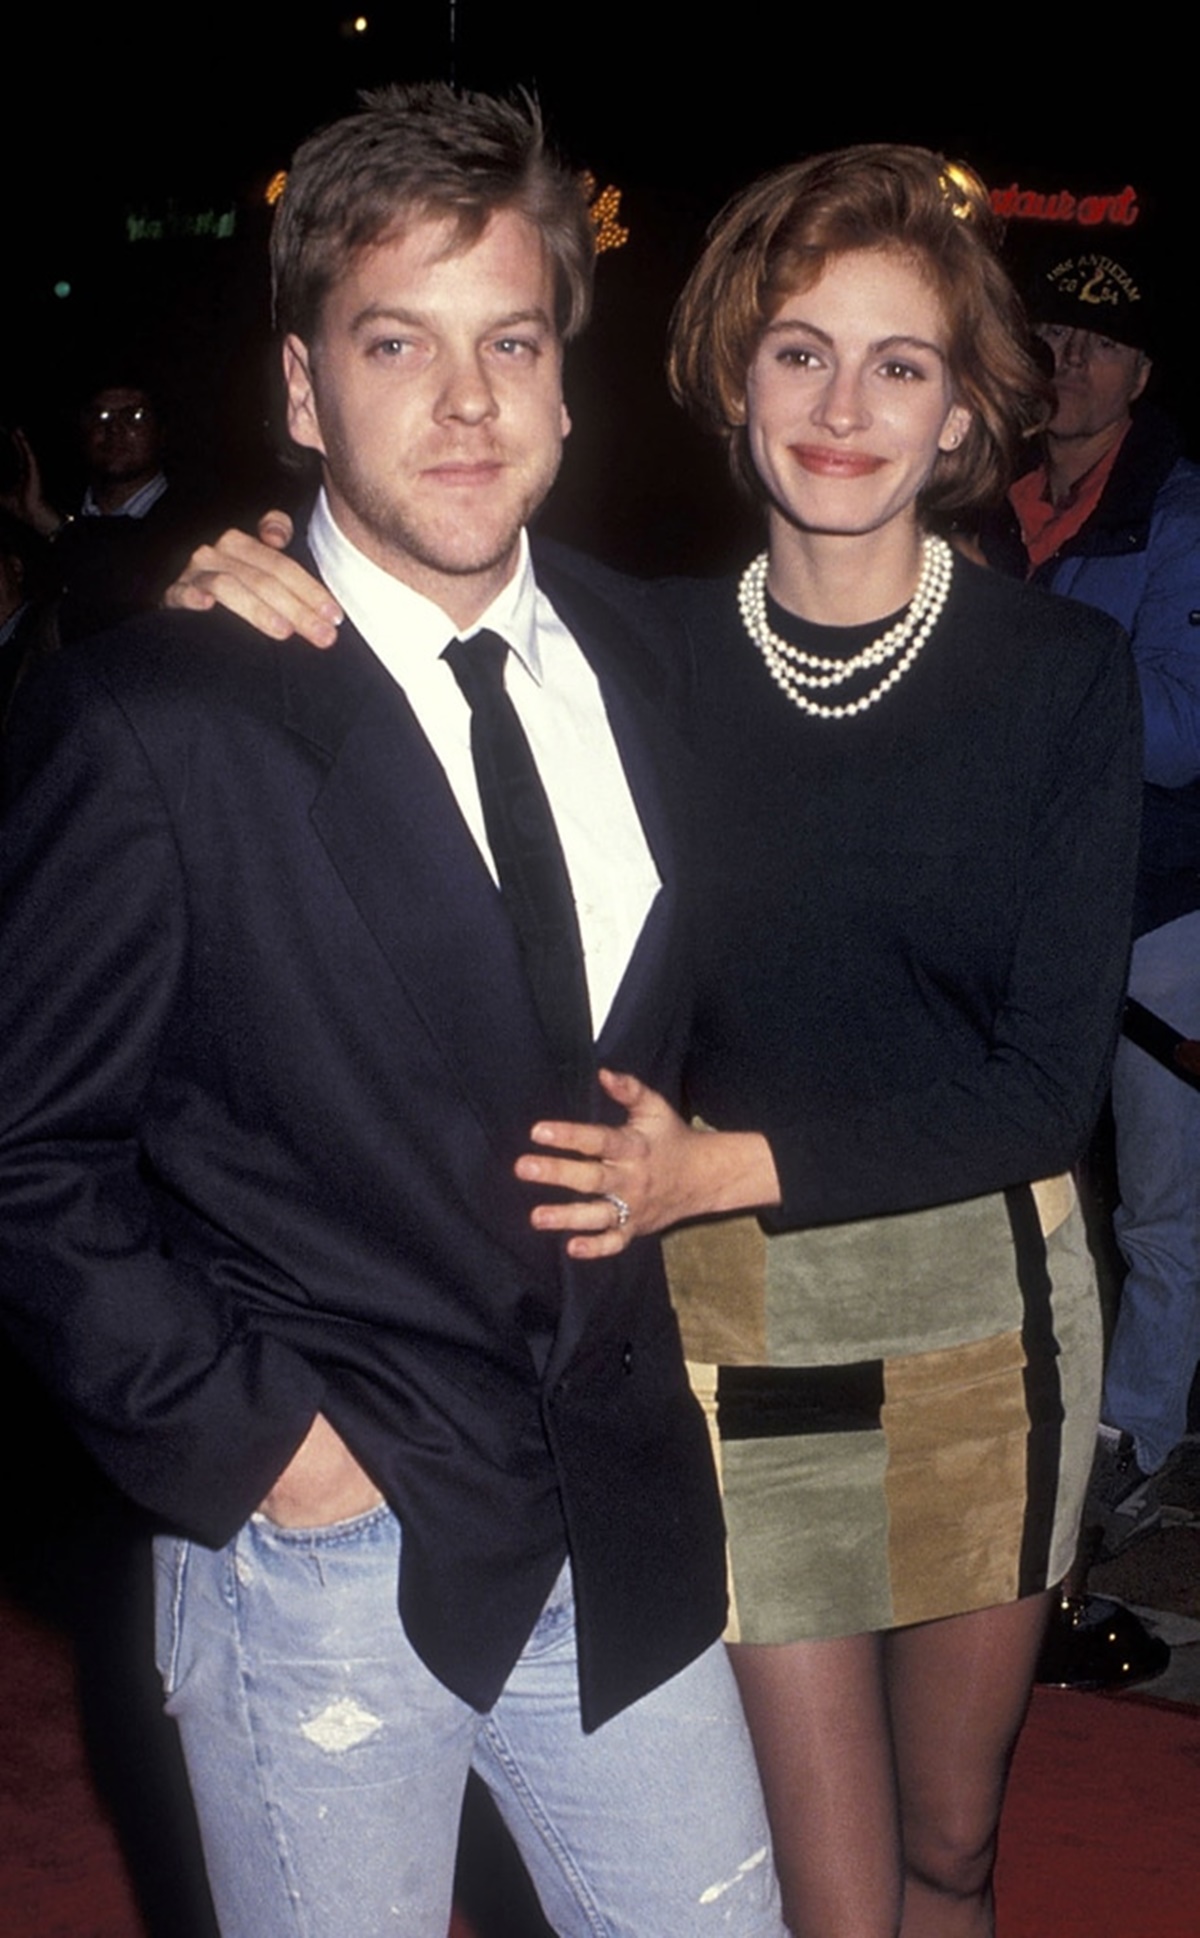 Julia Roberts és Kiefer Sutherland majdnem megházasodtak: 2 nappal az esküvő előtt szakítottak